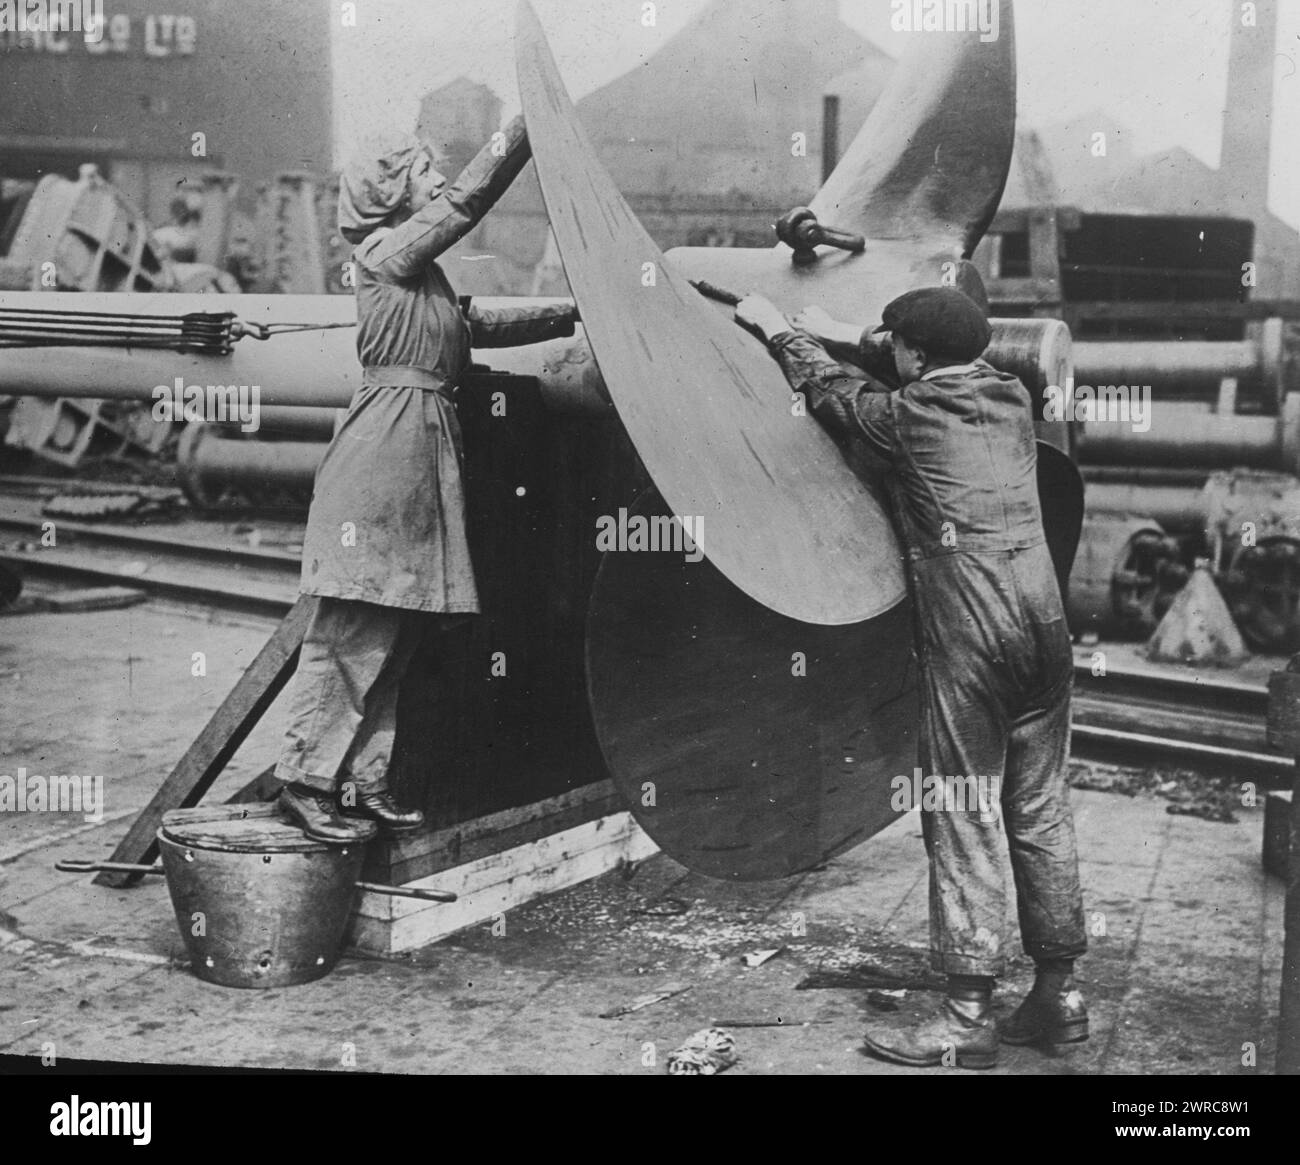 Femmes travaillant sur hélice, Angleterre, photographie montre des femmes travaillant sur une hélice dans un chantier naval de la marine en Angleterre pendant la première Guerre mondiale, entre env. 1915 et 1917, Guerre mondiale, 1914-1918, négatifs en verre, 1 négatif : verre Banque D'Images